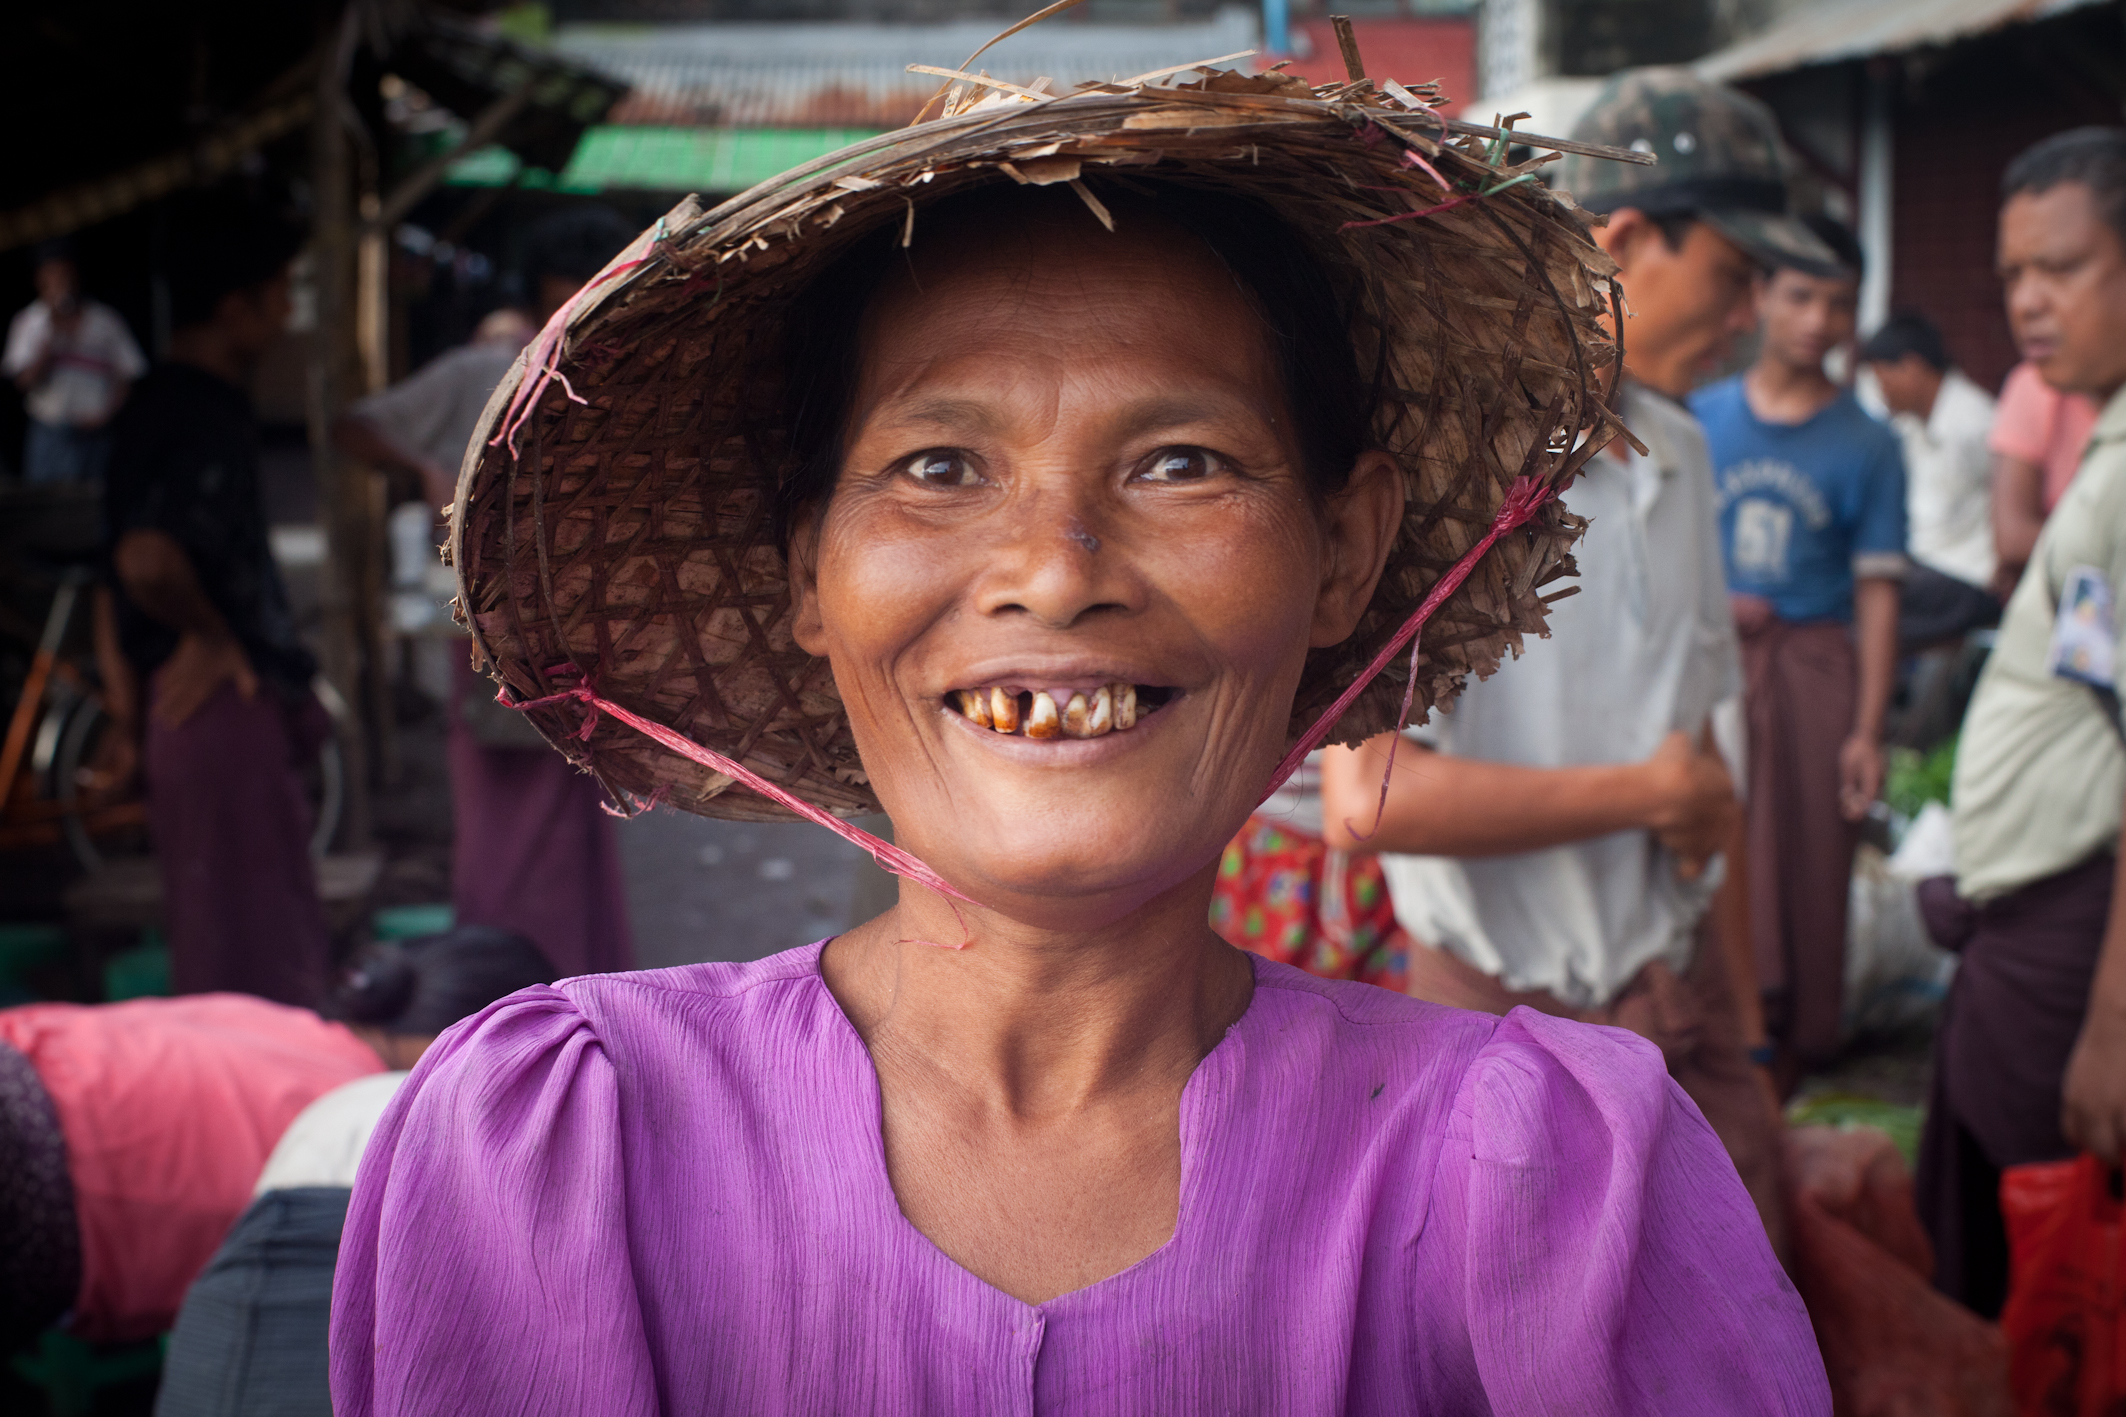 En Birmanie, les femmes sont souvent cantonnées au rôle de mère et de cuisinière quand elles ne sont pas victimes de violences sexuelles